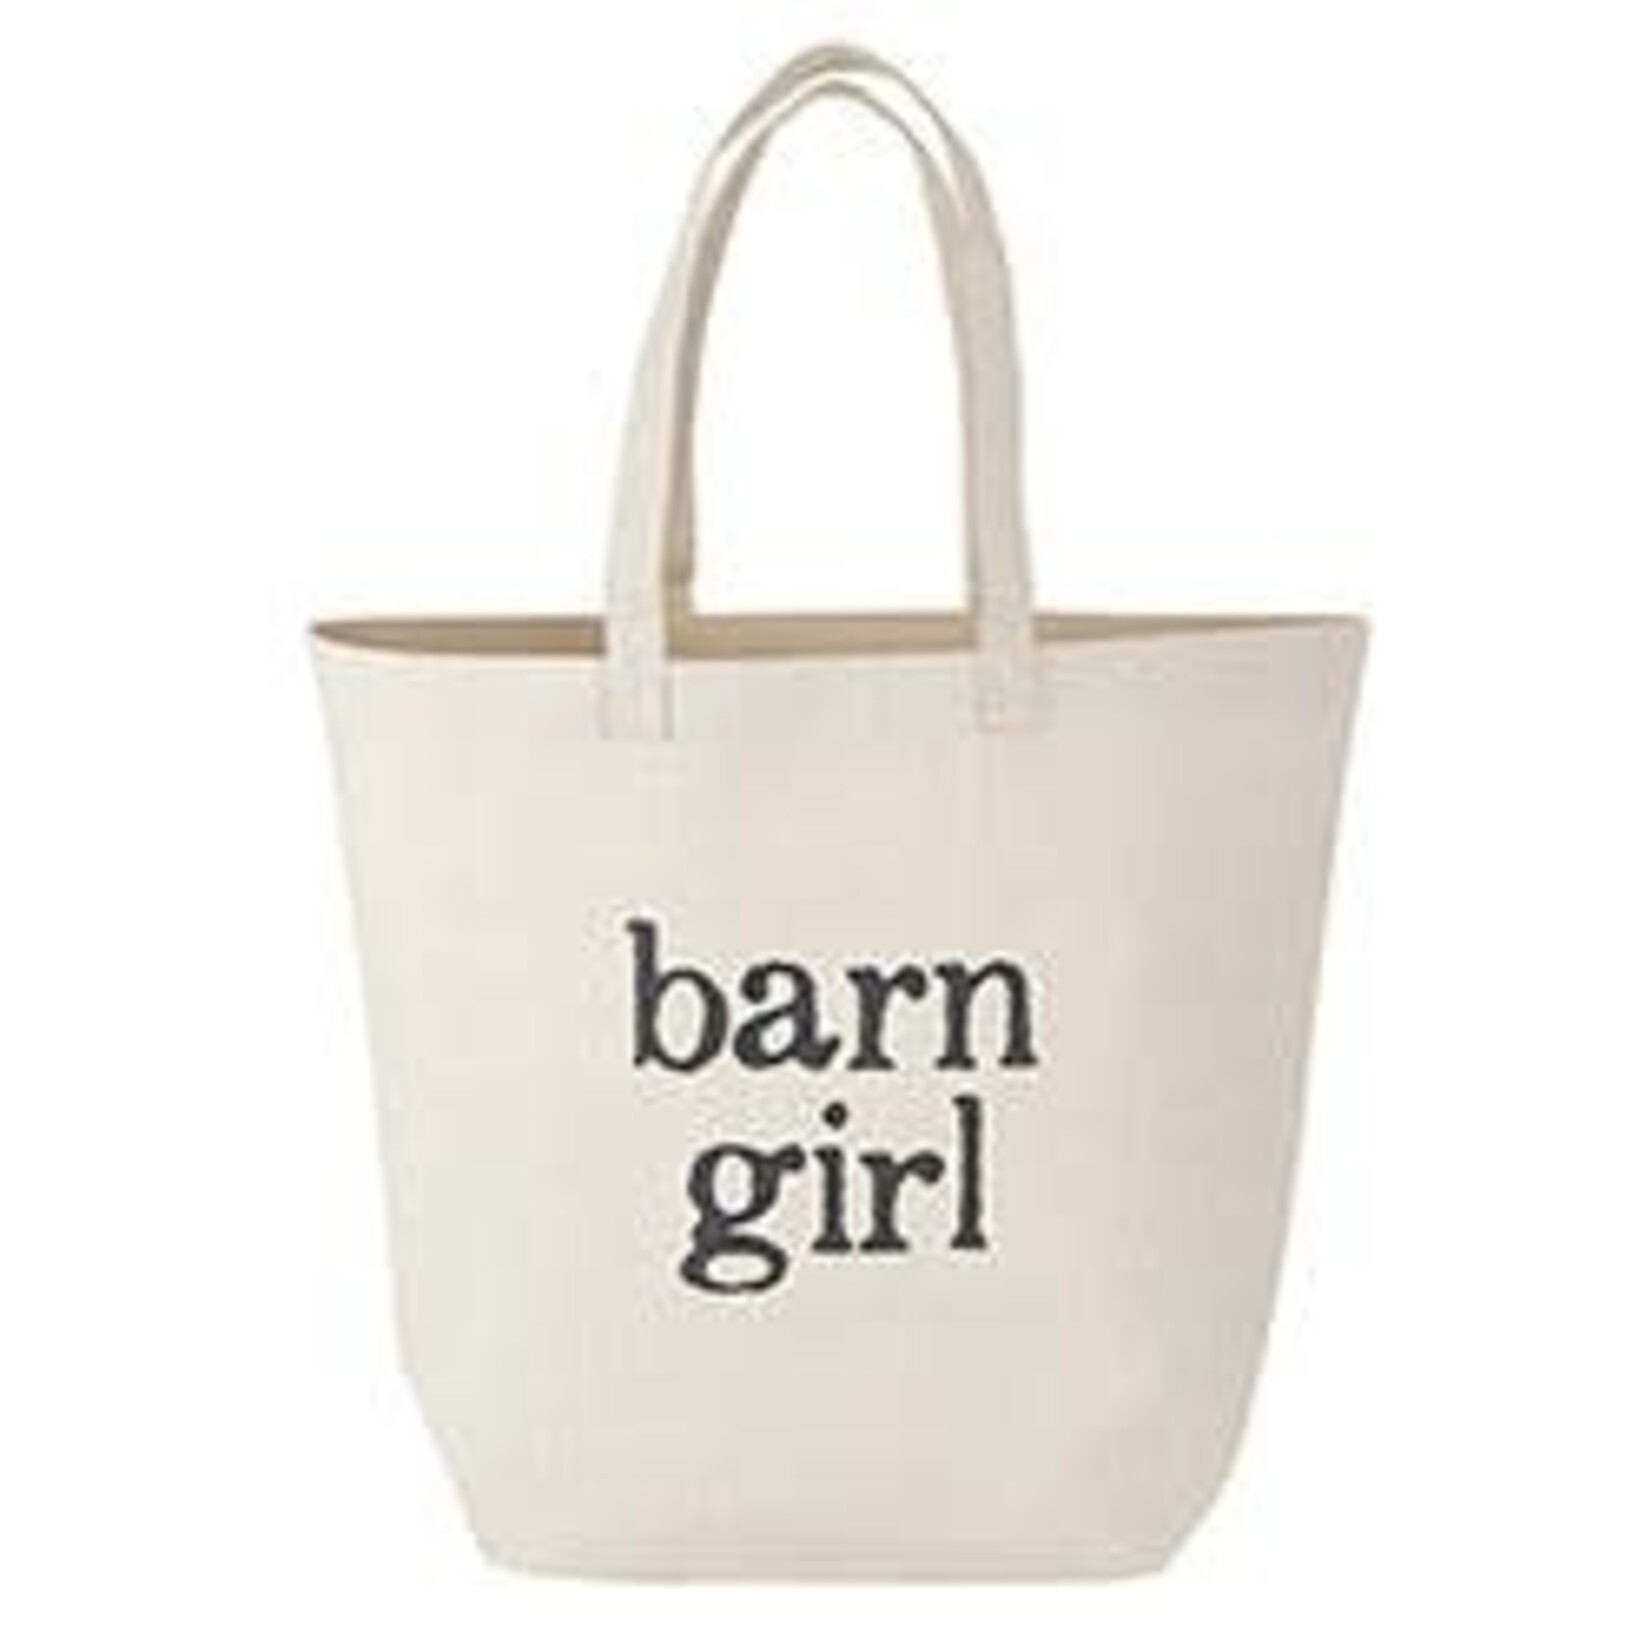 Barn Girl Tote Bag